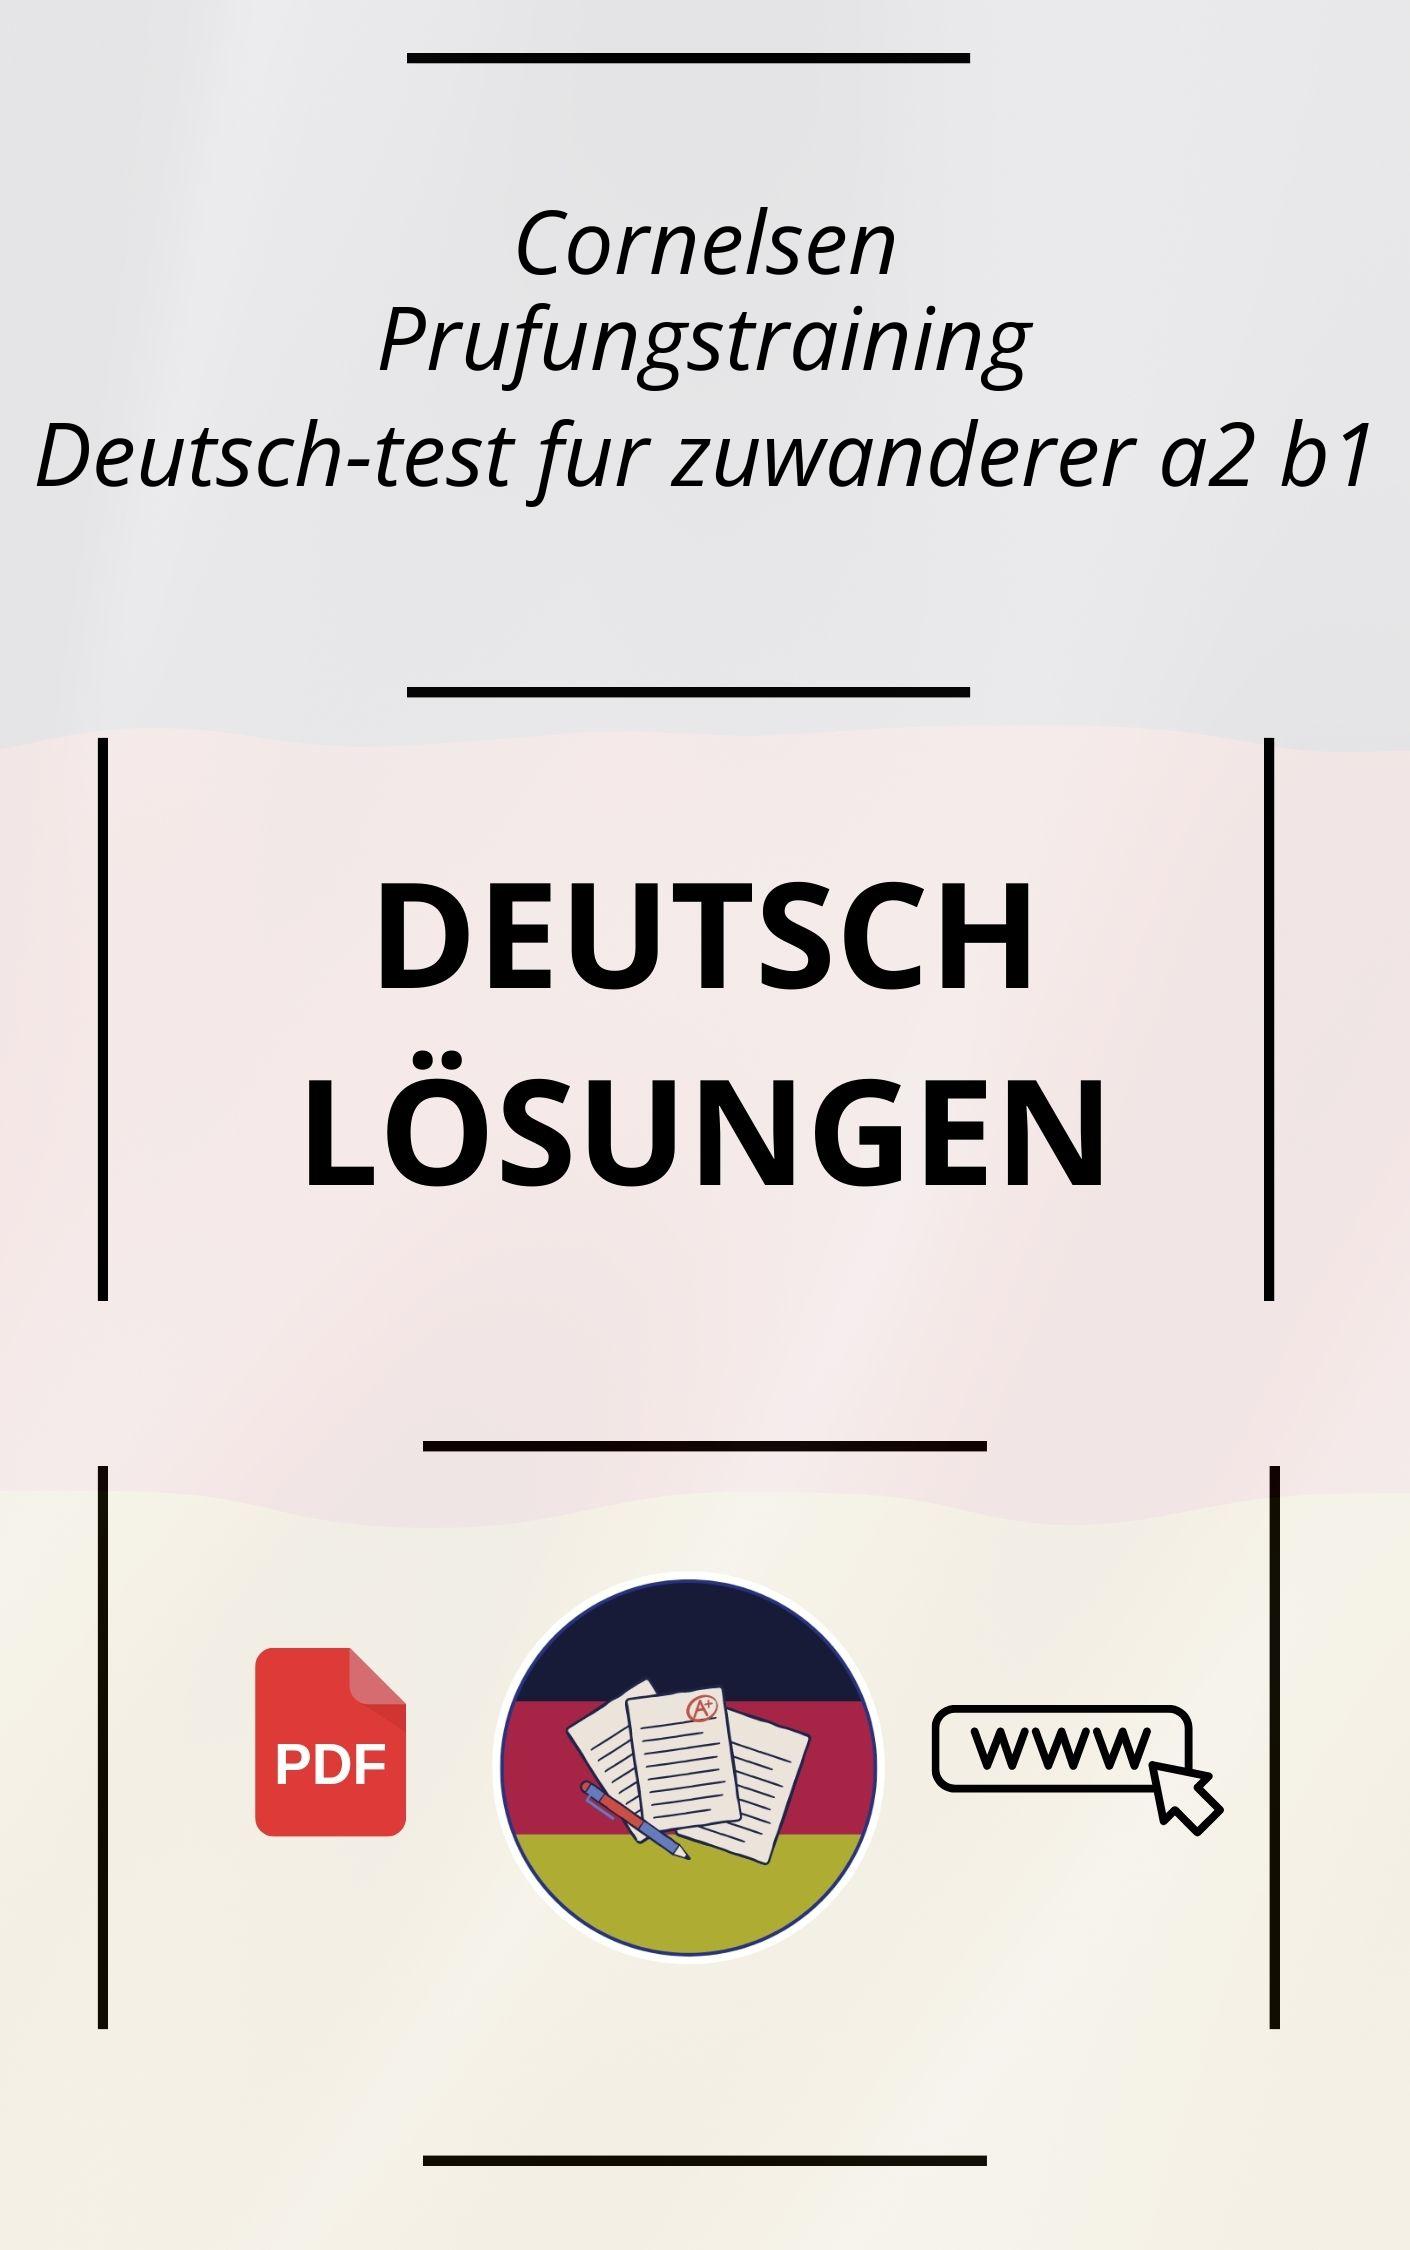 Prüfungstraining Deutsch-test für zuwanderer a2 b1 Lösungen